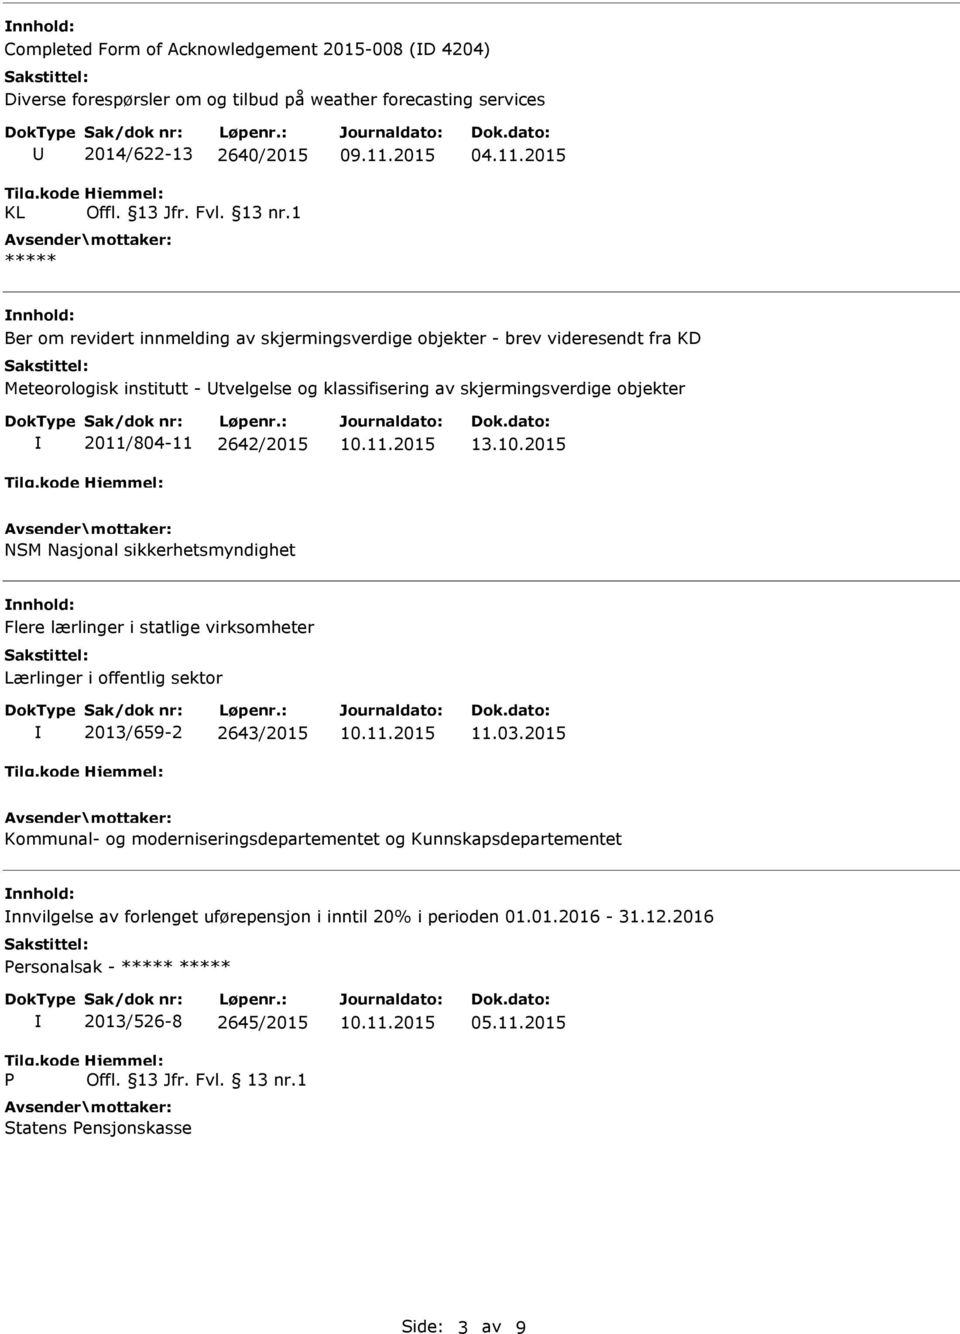 2011/804-11 2642/2015 13.10.2015 NSM Nasjonal sikkerhetsmyndighet Flere lærlinger i statlige virksomheter Lærlinger i offentlig sektor 2013/659-2 2643/2015 11.03.